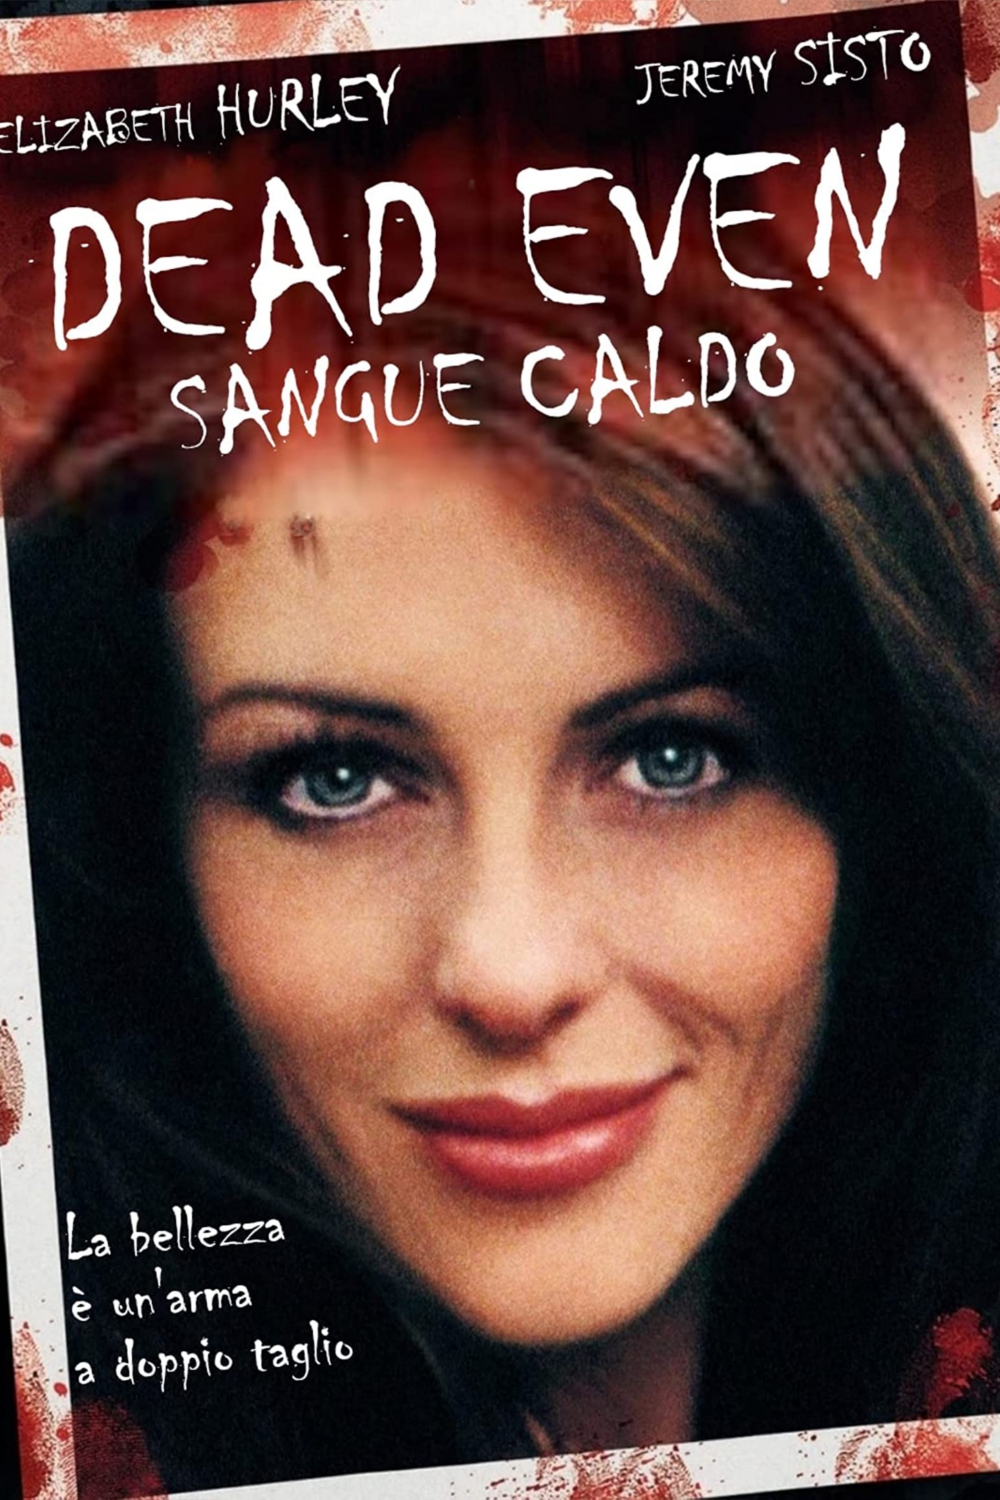 Dead even – Sangue caldo (2007)